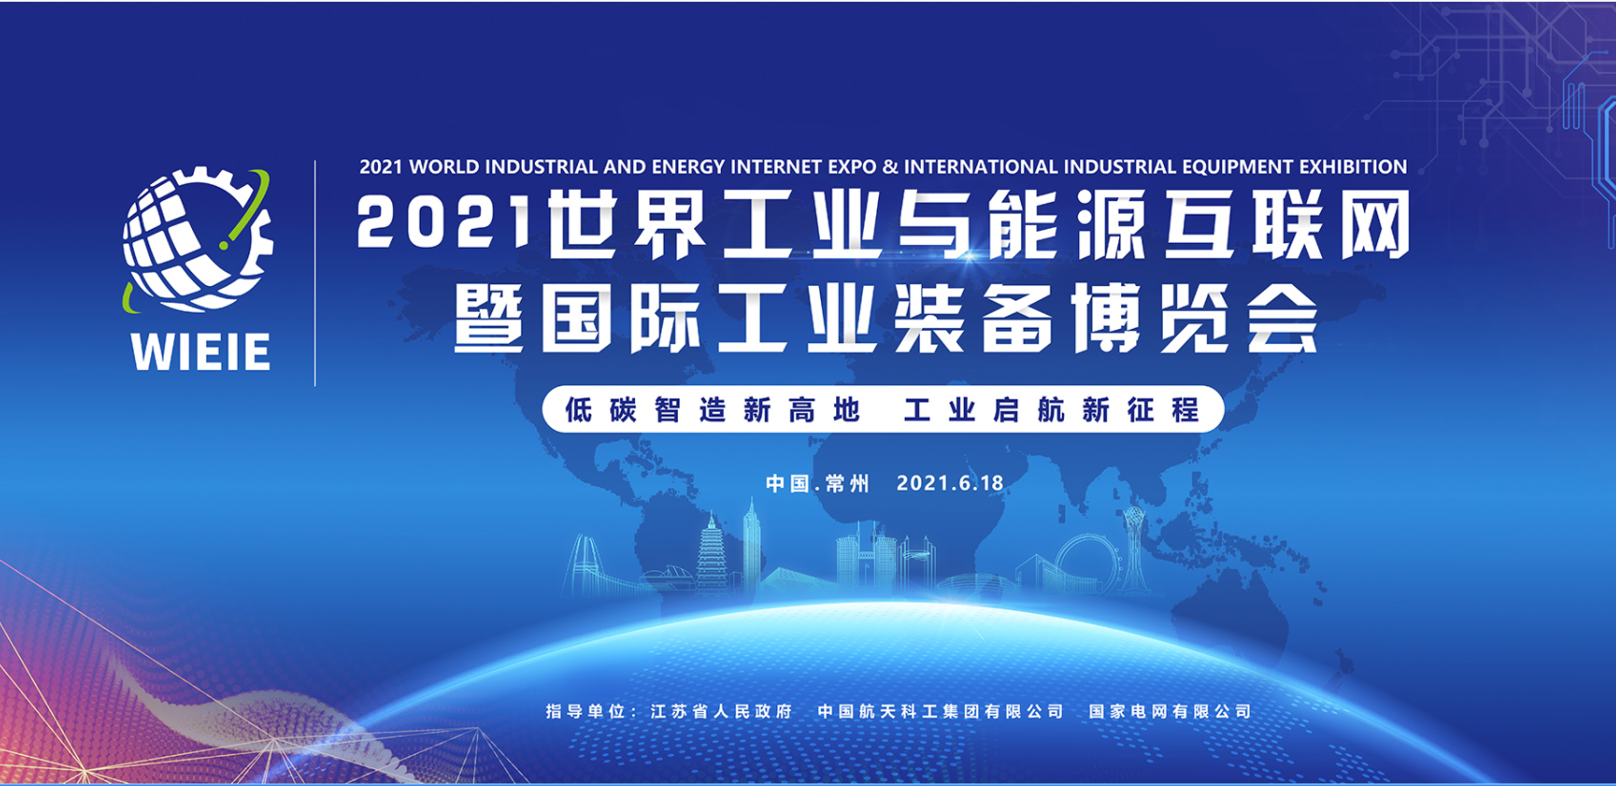 2021世界工業與能源互聯網暨國際工業裝備博覽會